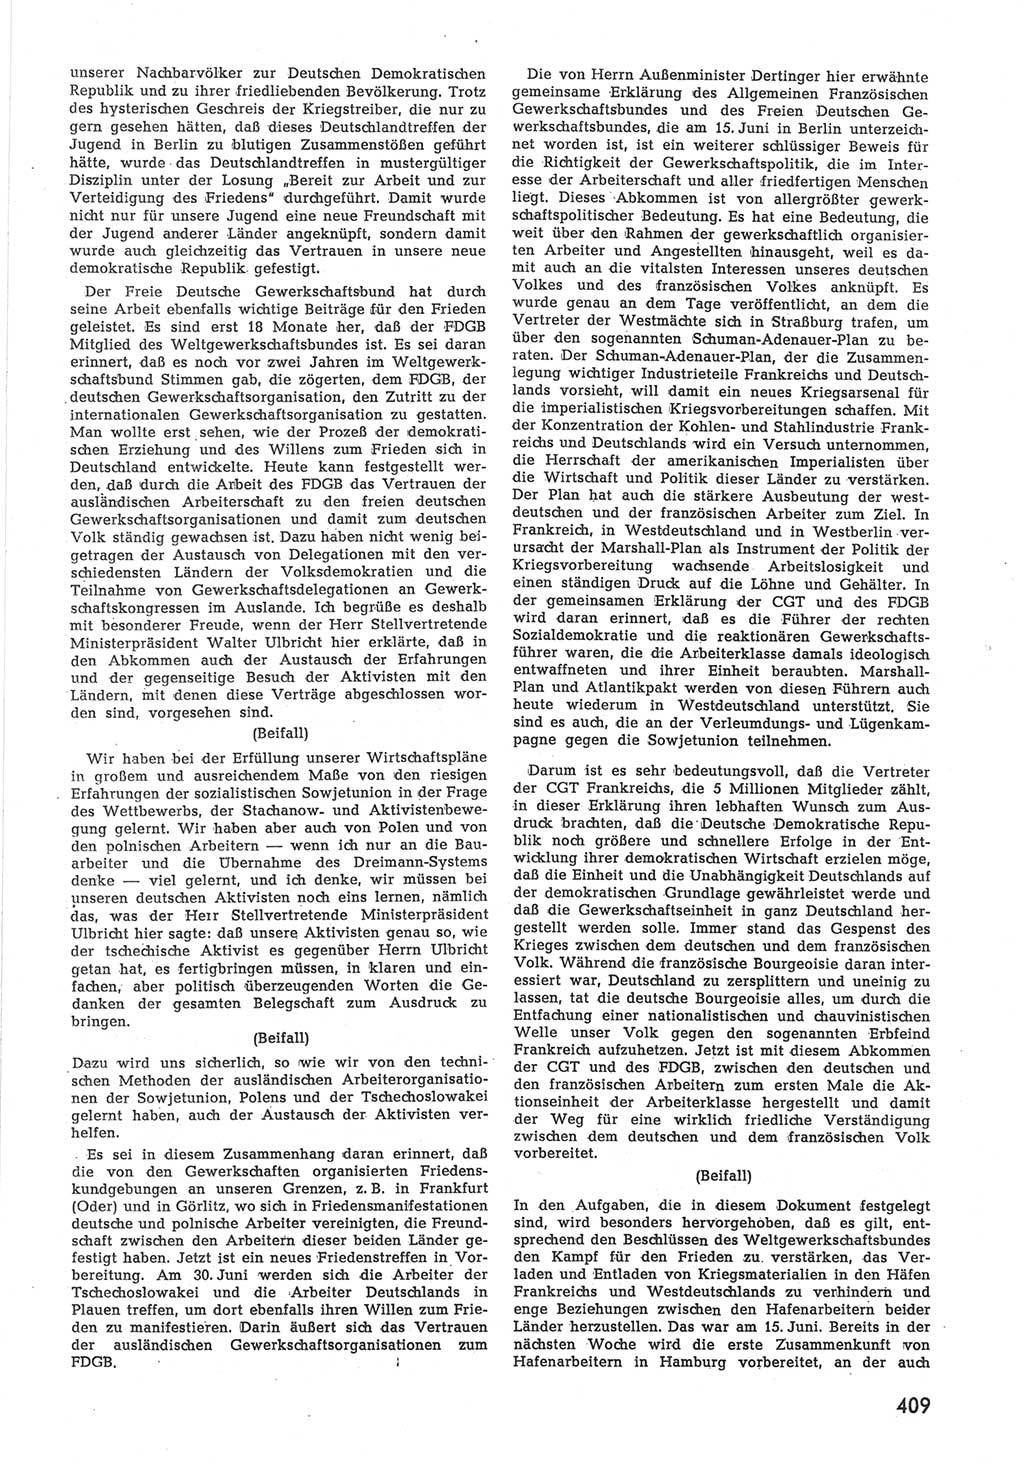 Provisorische Volkskammer (VK) der Deutschen Demokratischen Republik (DDR) 1949-1950, Dokument 427 (Prov. VK DDR 1949-1950, Dok. 427)